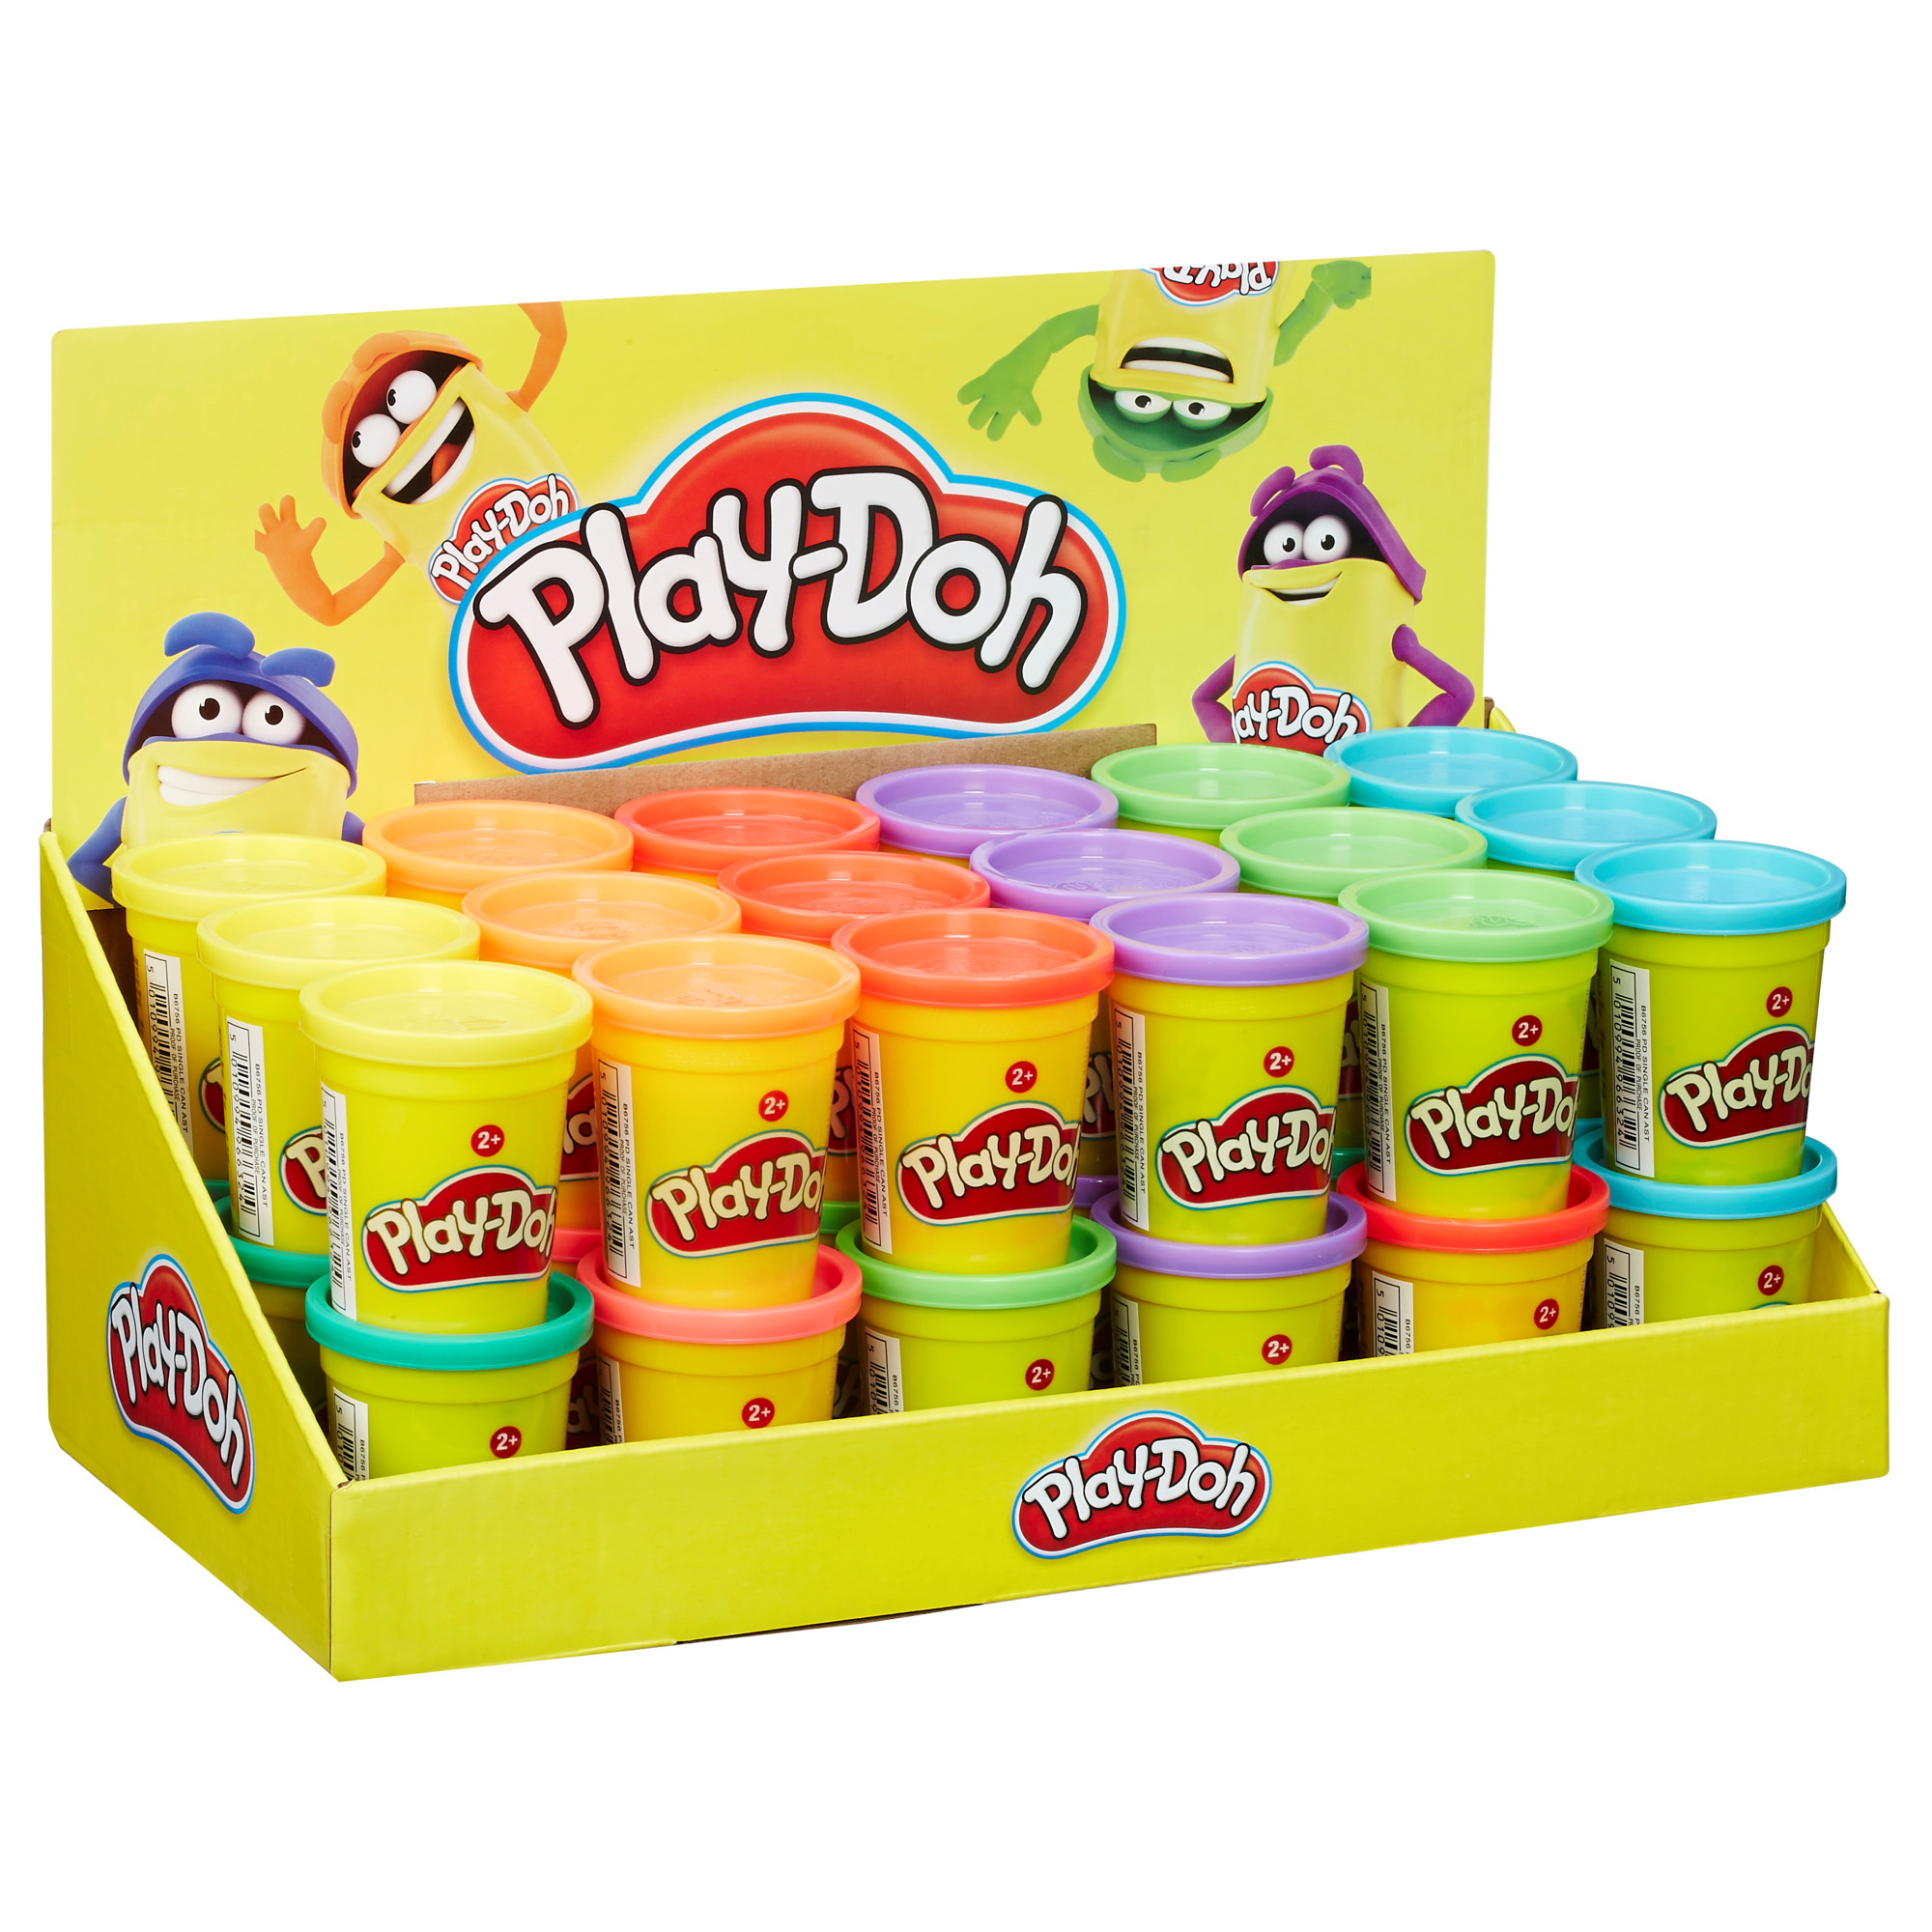 Play-doh - vasetto singolo, vasetto di pasta da modellare atossica